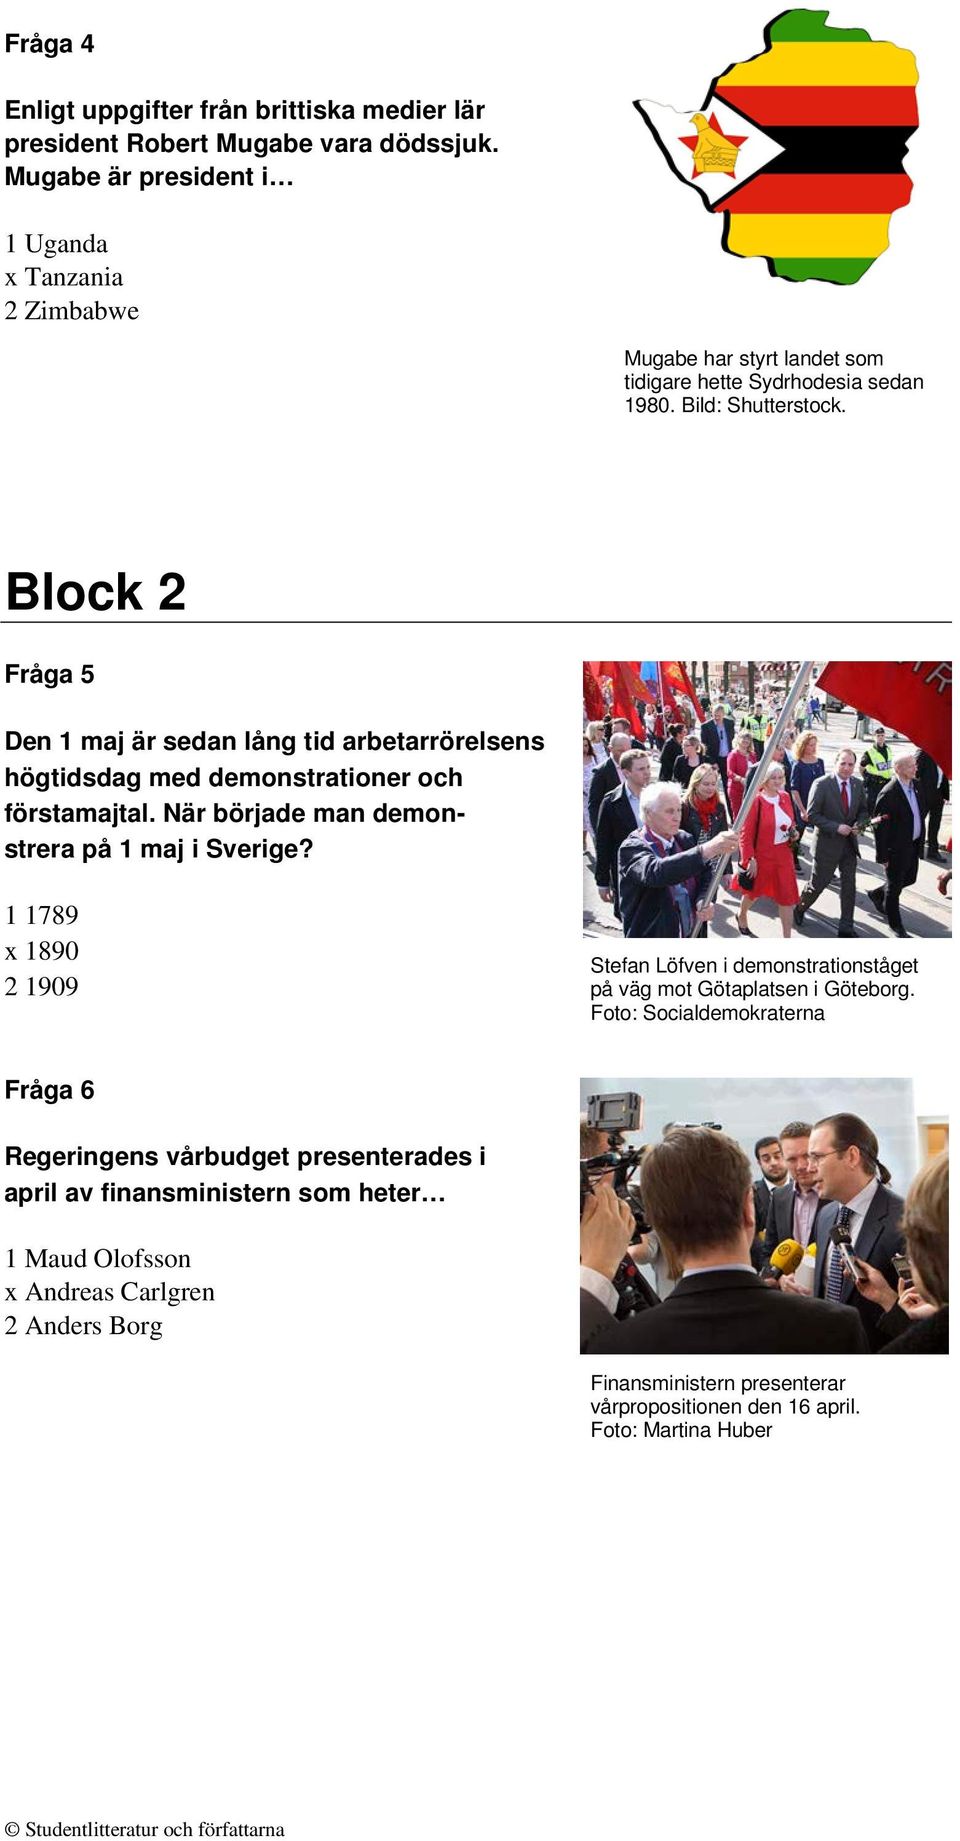 Block 2 Fråga 5 Den 1 maj är sedan lång tid arbetarrörelsens högtidsdag med demonstrationer och förstamajtal. När började man demonstrera på 1 maj i Sverige?